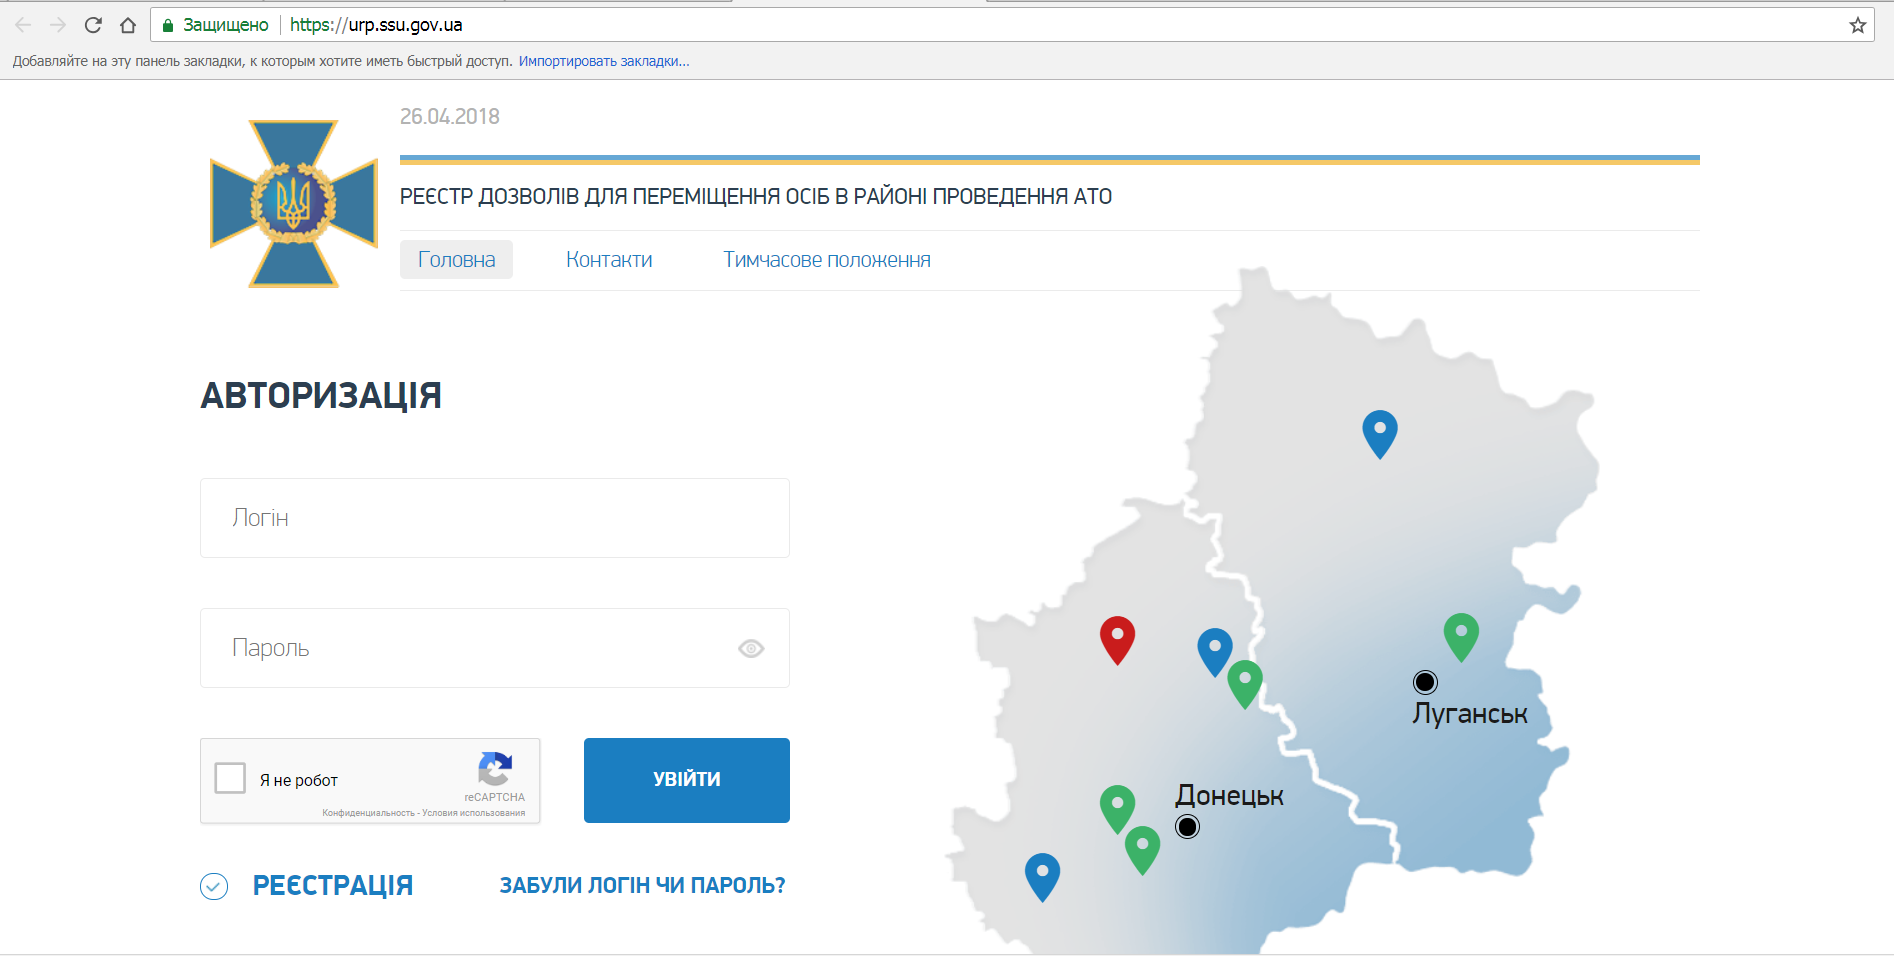 Україна онлайн: які держпослуги можна оформити, не виходячи з дому